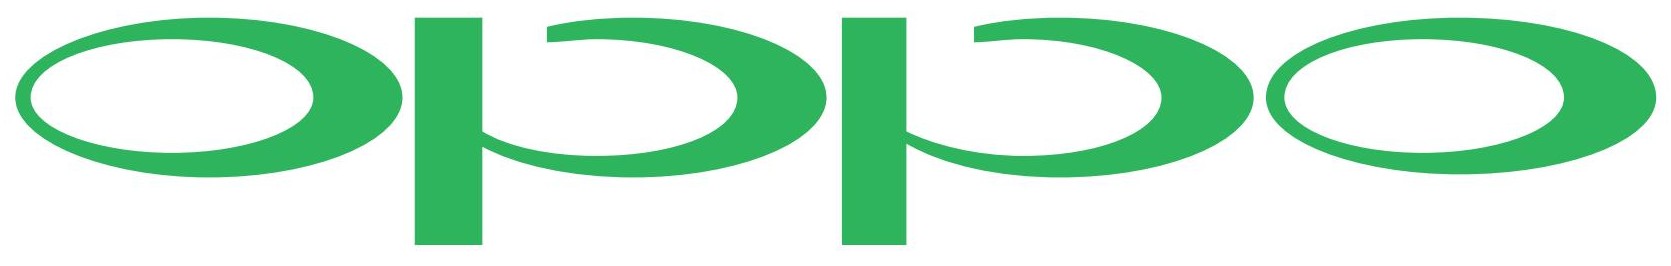 Oppo Logo - http://www.logoep